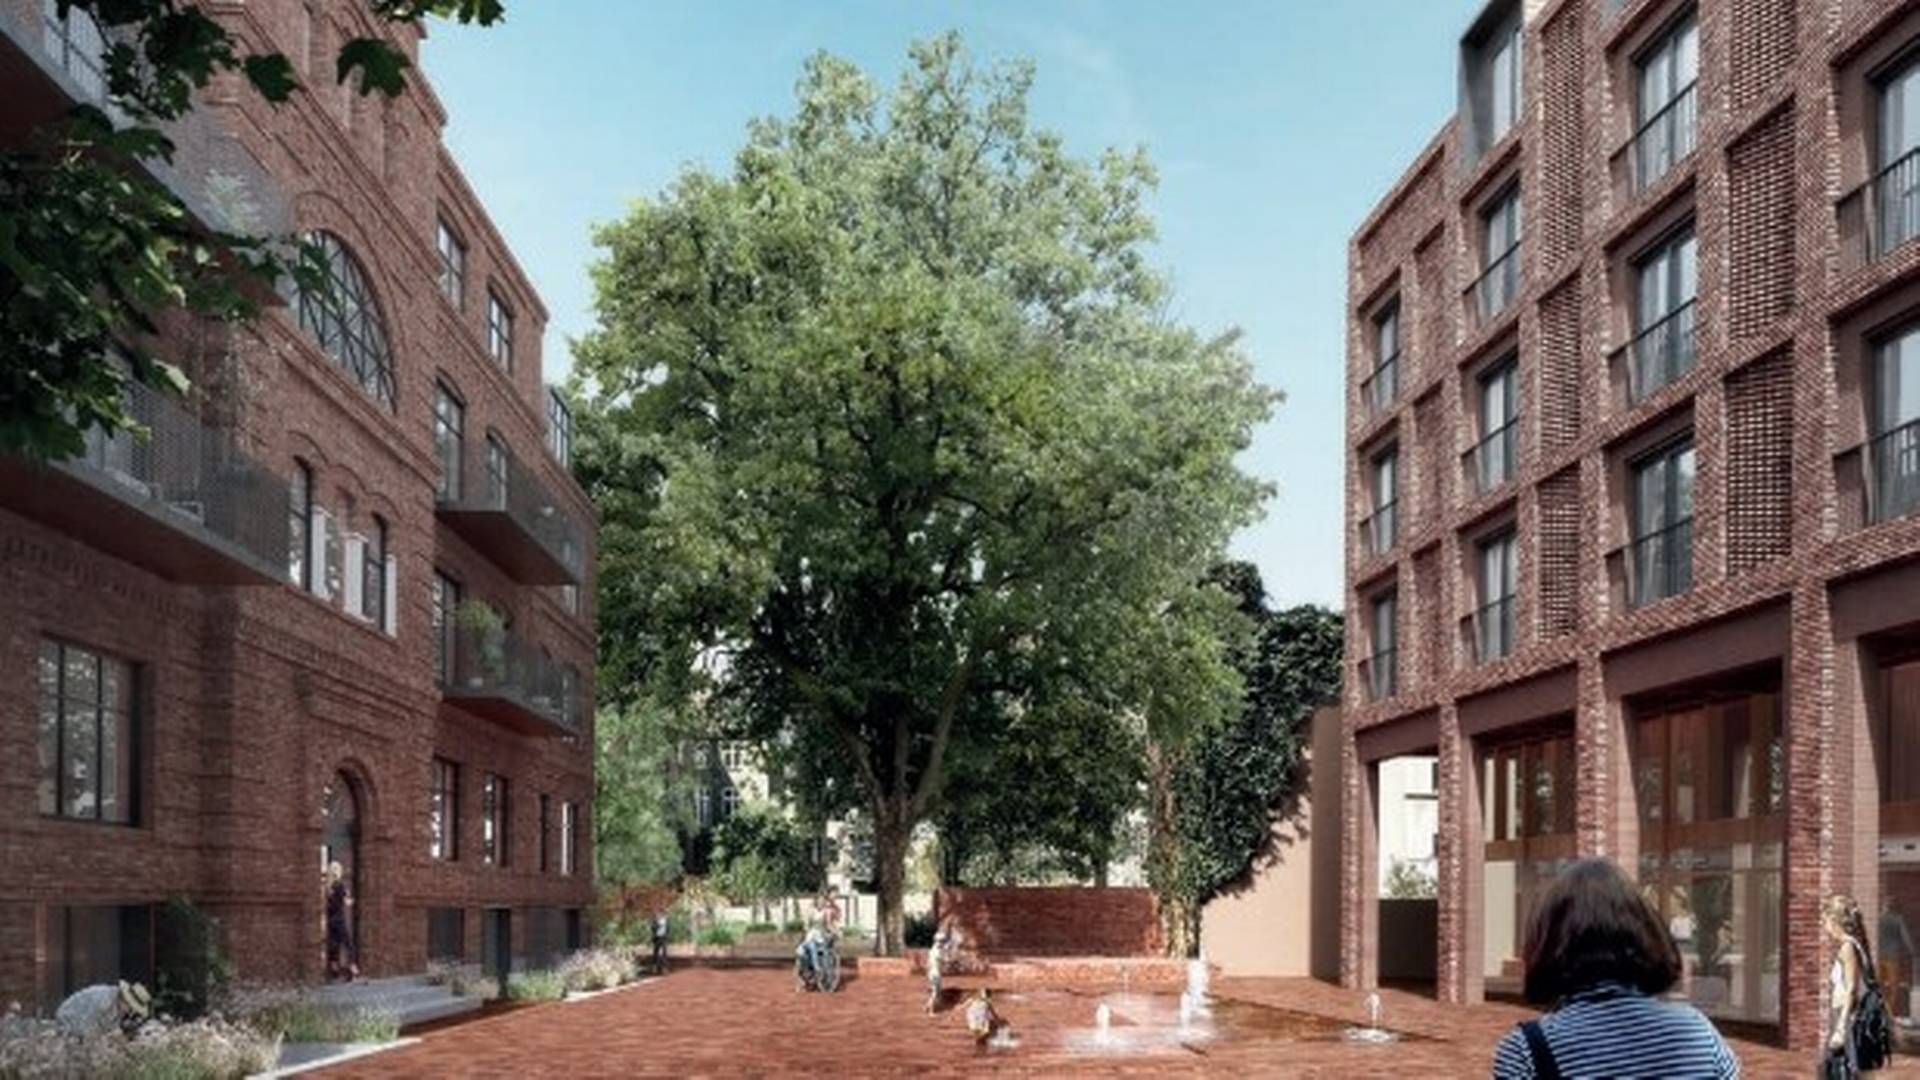 Boliger skal udfylde mere end 160 år gamle skolebygninger på Frederiksberg. Til højre ses en nybygning, mens bygningen til venstre er en eksisterende bygning, der renoveres og nyindrettes. Visualisering: Frederiksberg Kommune.